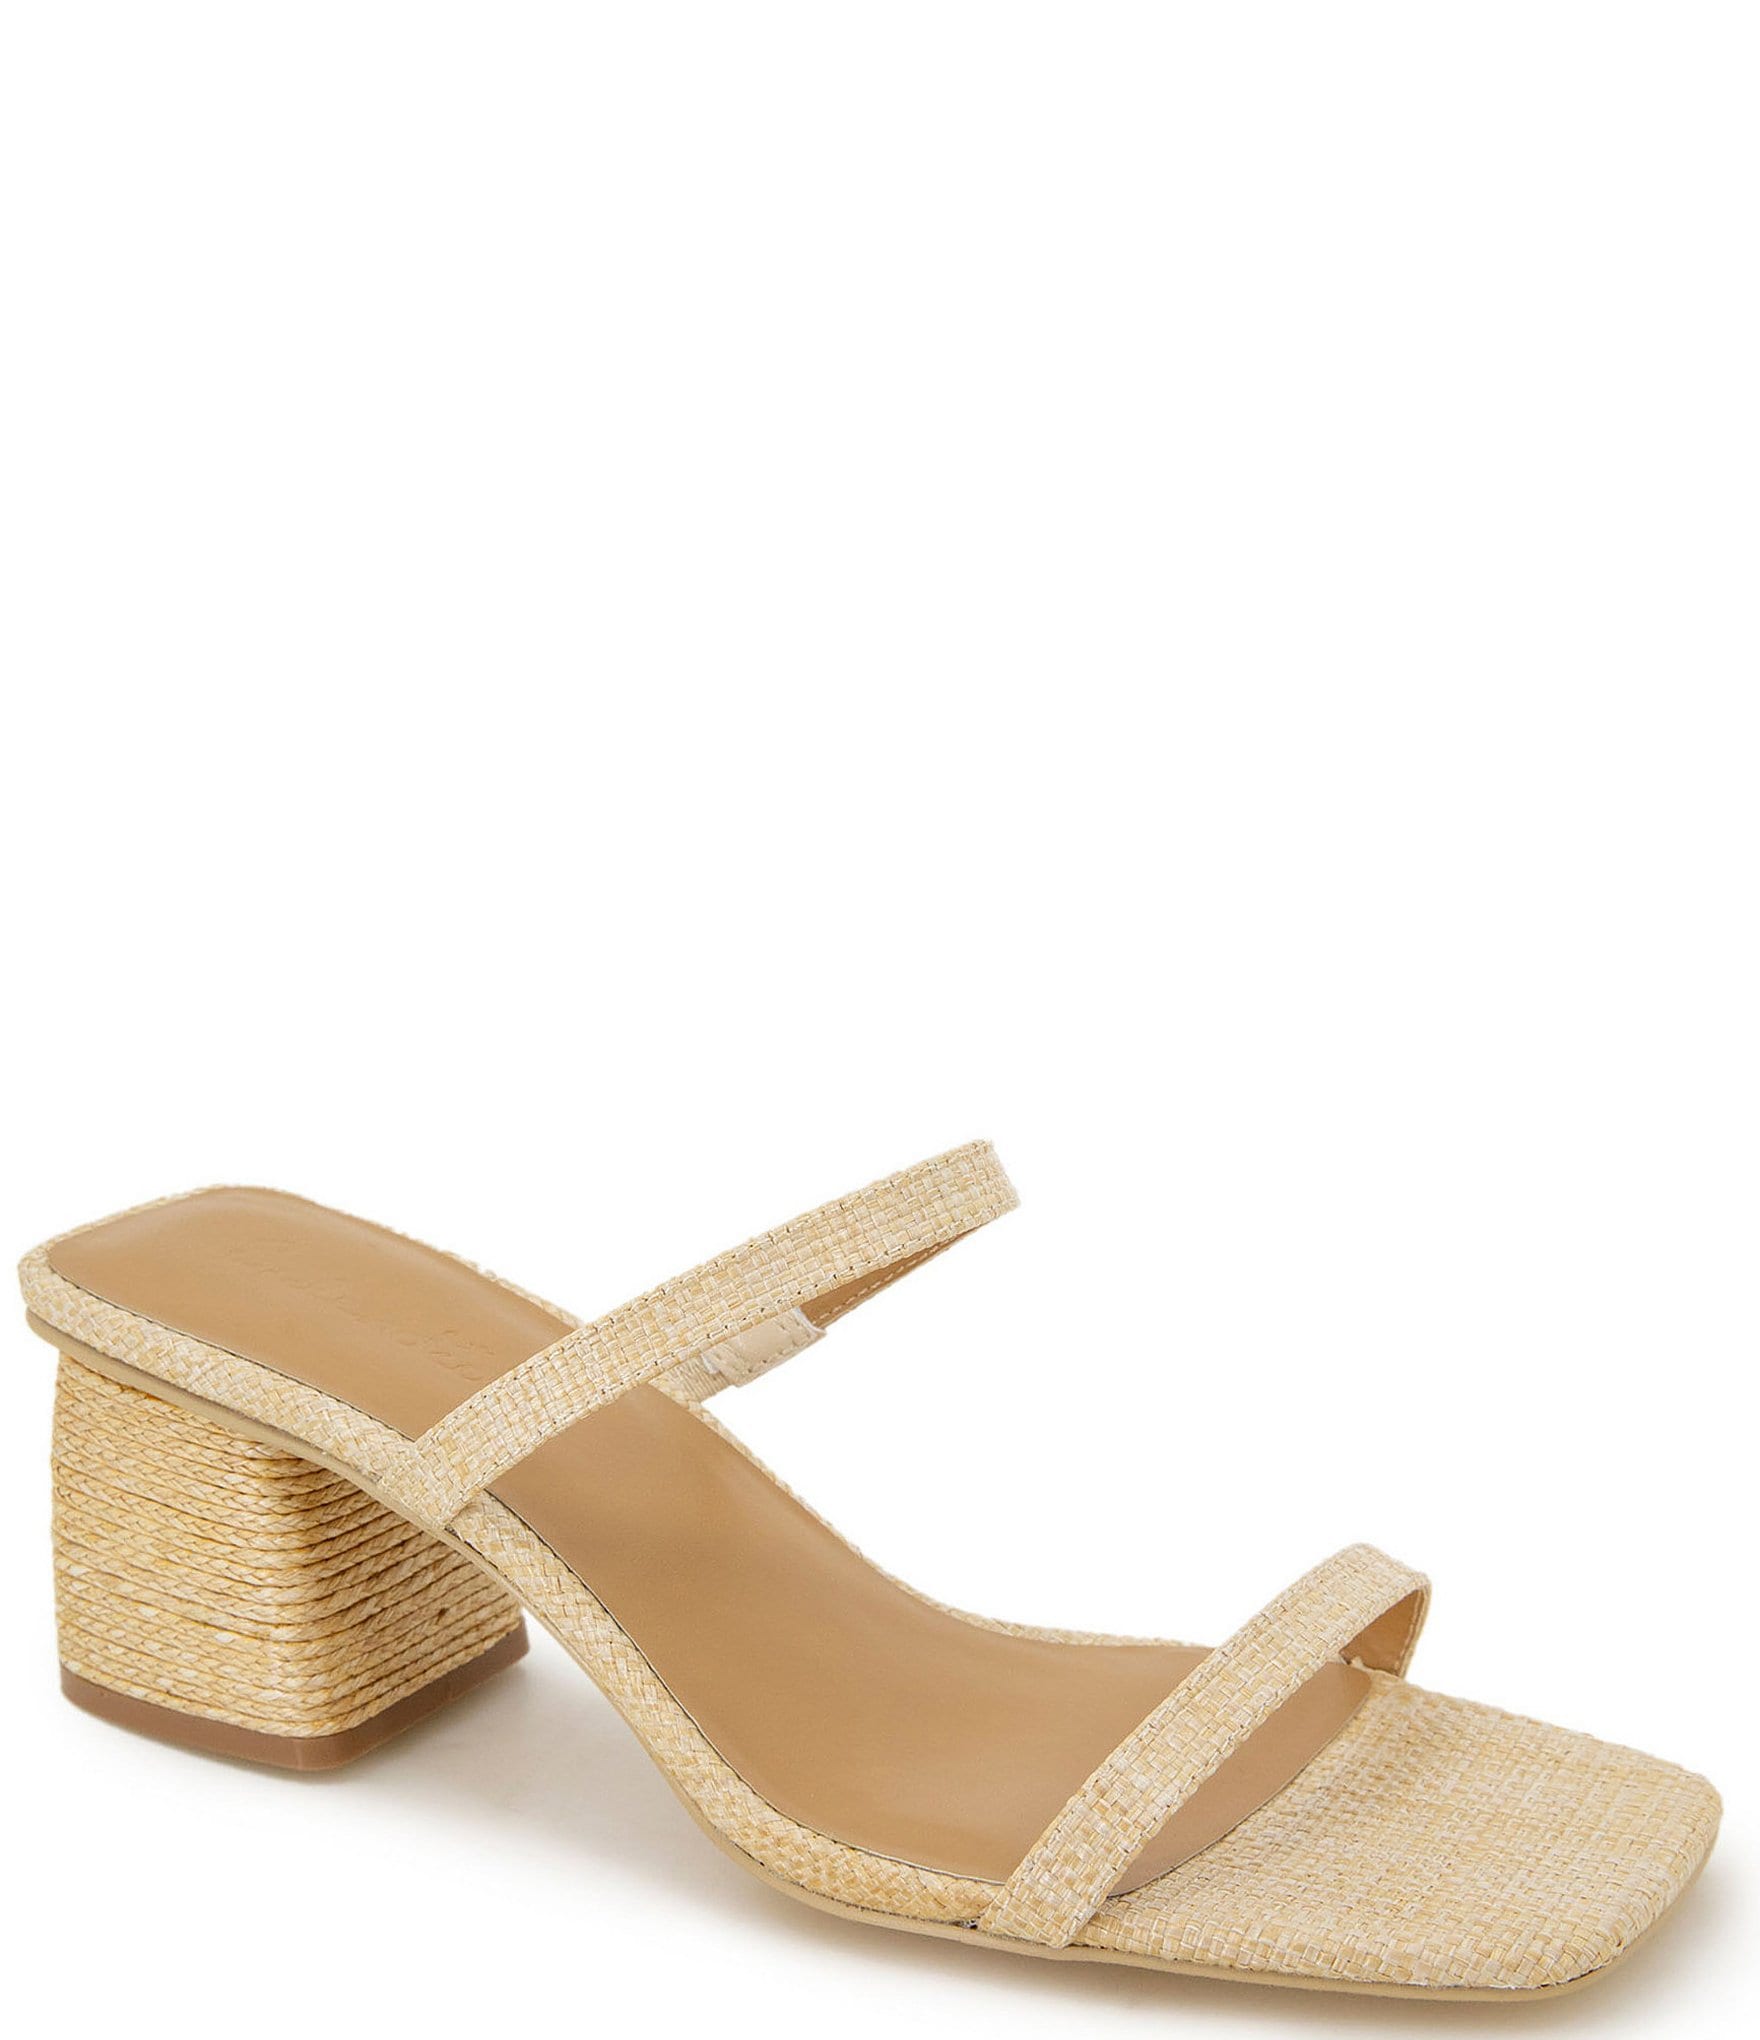 Splendid Kharis Raffia Block Heel Sandals | Dillard's